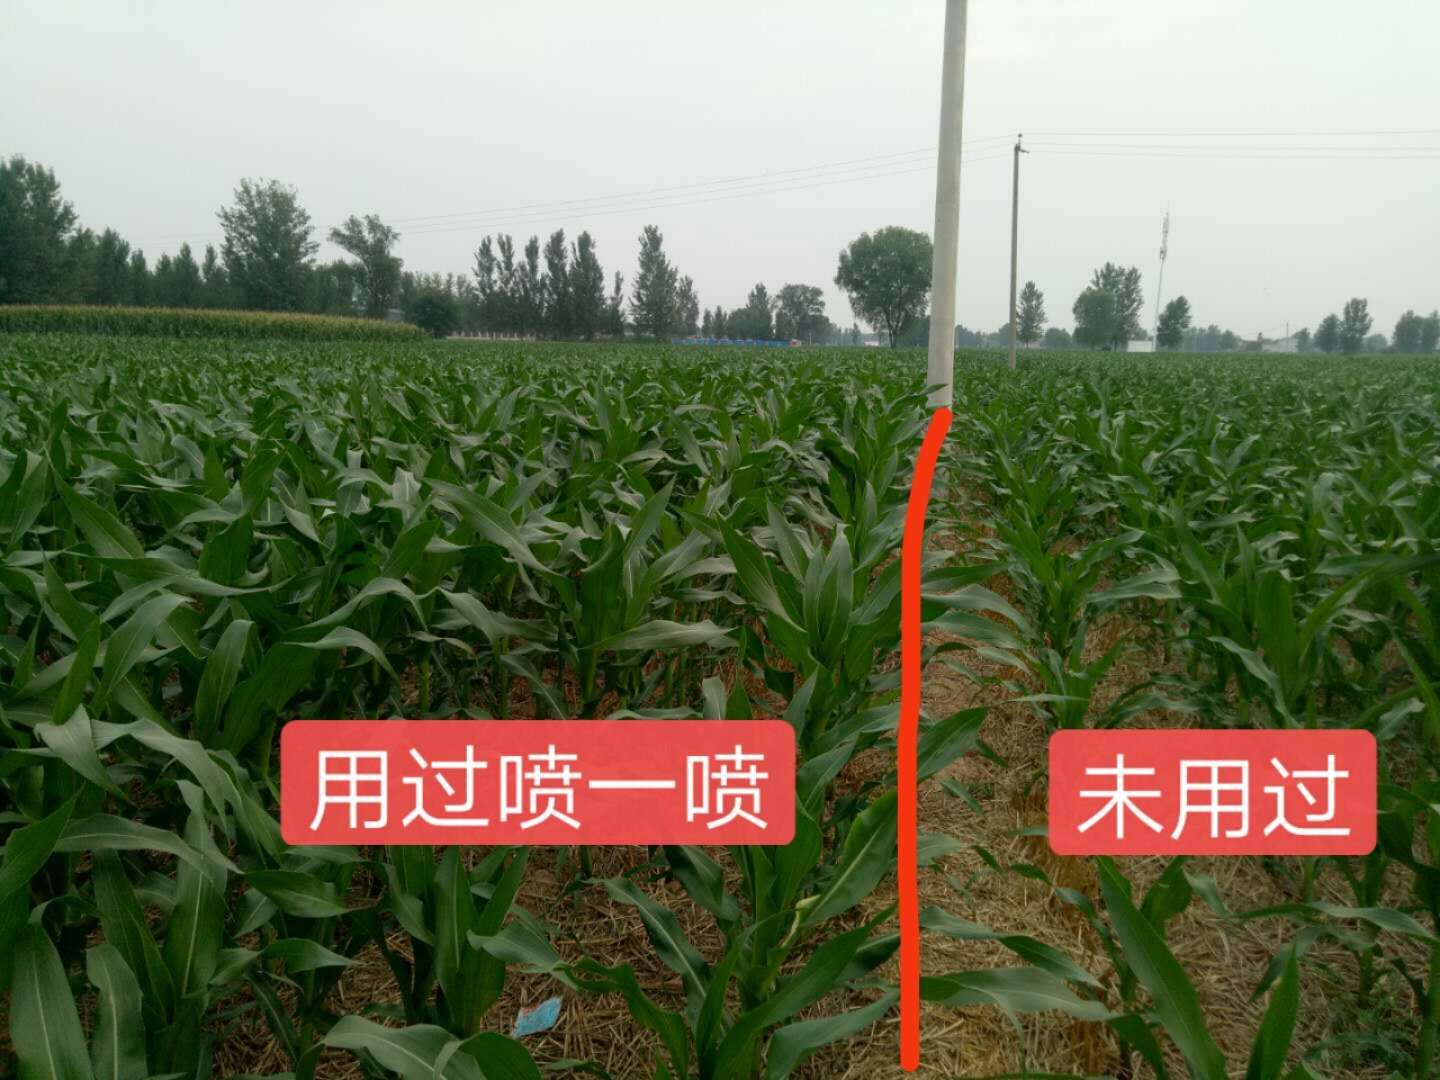 玉米控旺专用 - 叶面肥系列 - 蕾诺（北京）生物科技有限公司官网丨蕾诺特种肥丨蕾诺特种肥料：特种叶面肥、特种冲施肥、特种水溶肥